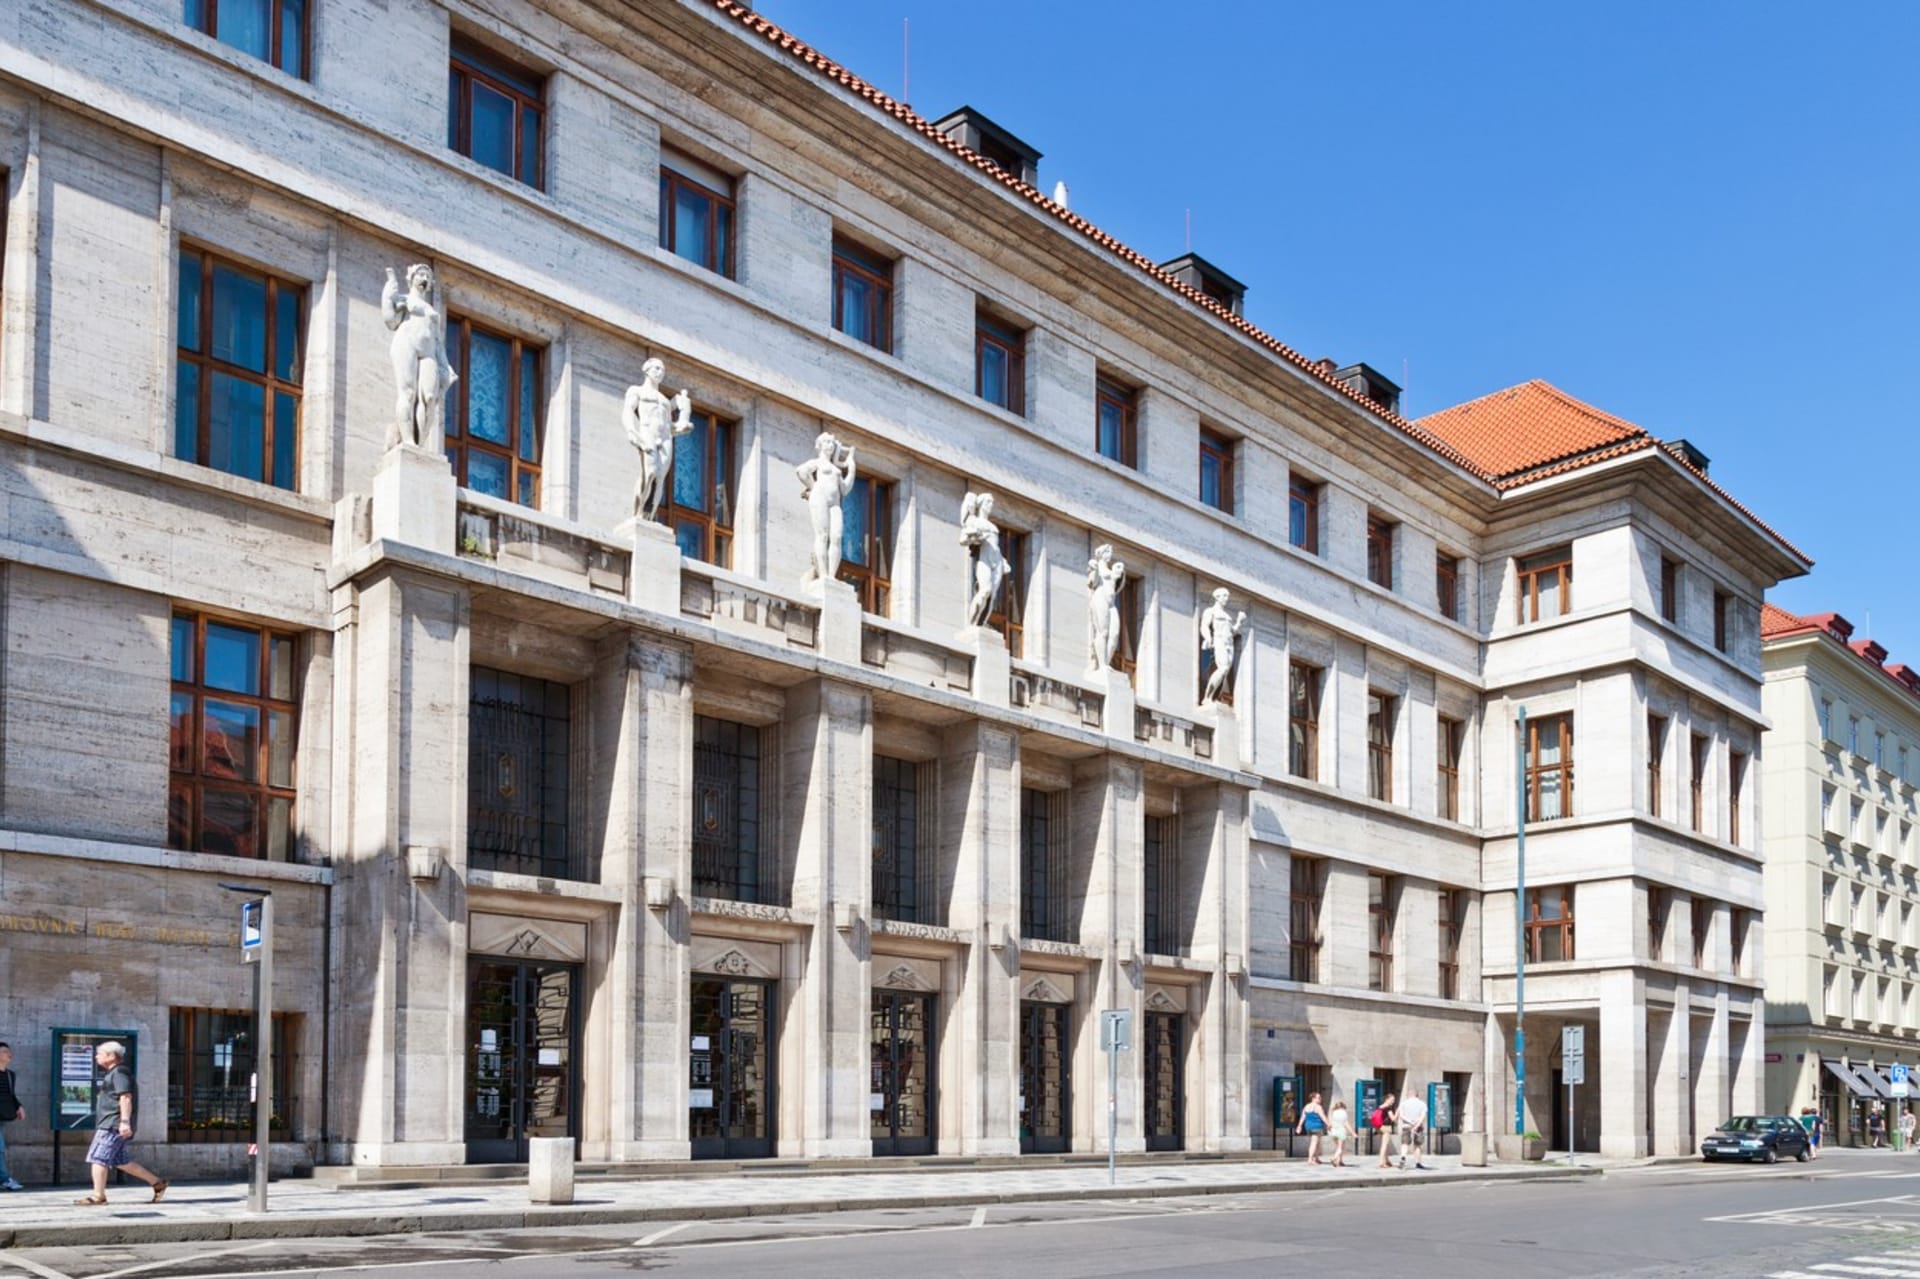 Městská knihovna, ve které se nachází Rezidence pražského primátora